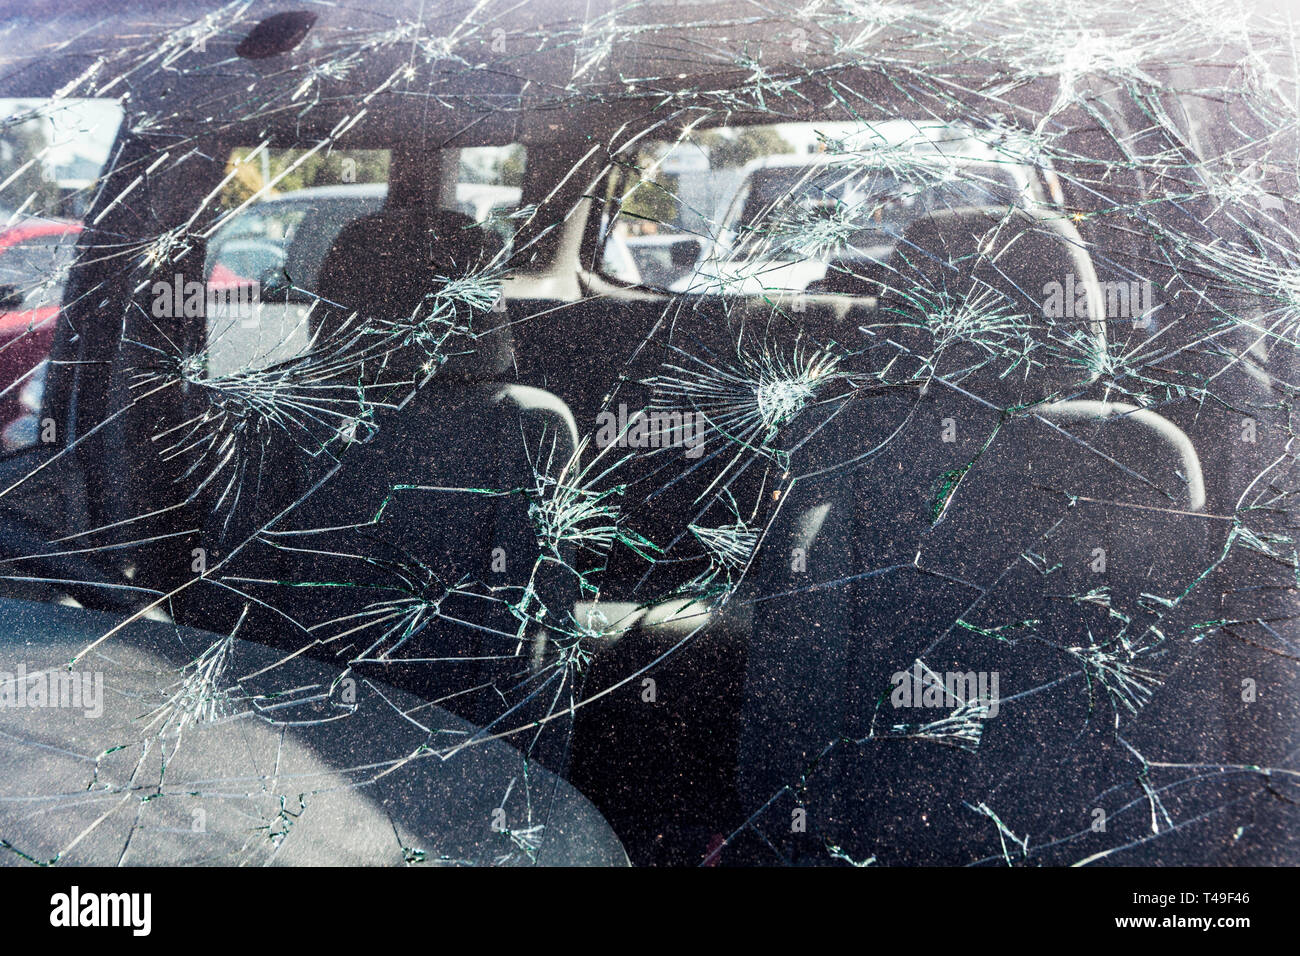 Granizo daños en el parabrisas de un coche Foto de stock